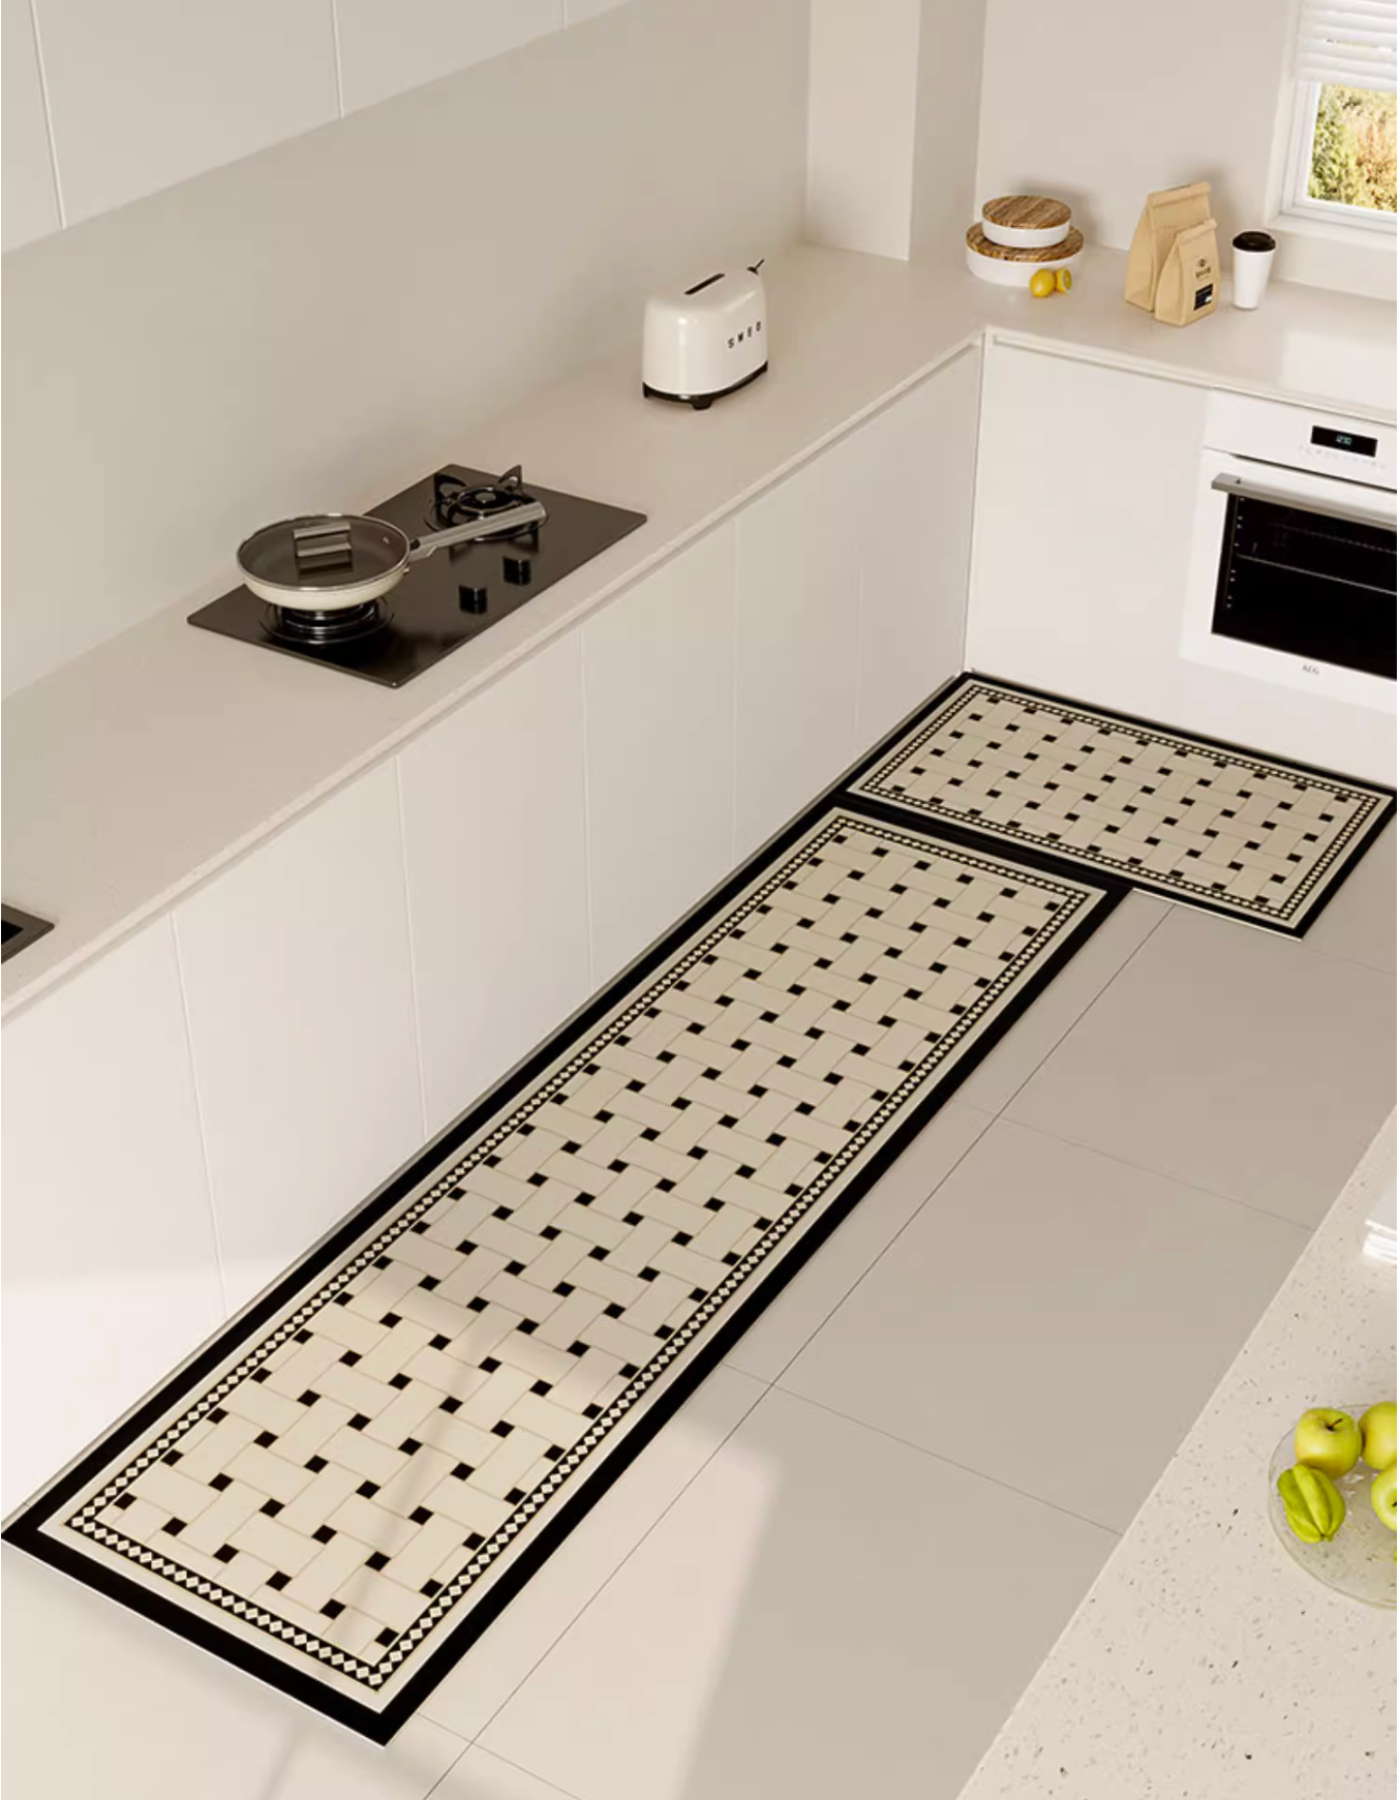 Checkerboard Kitchen Mat